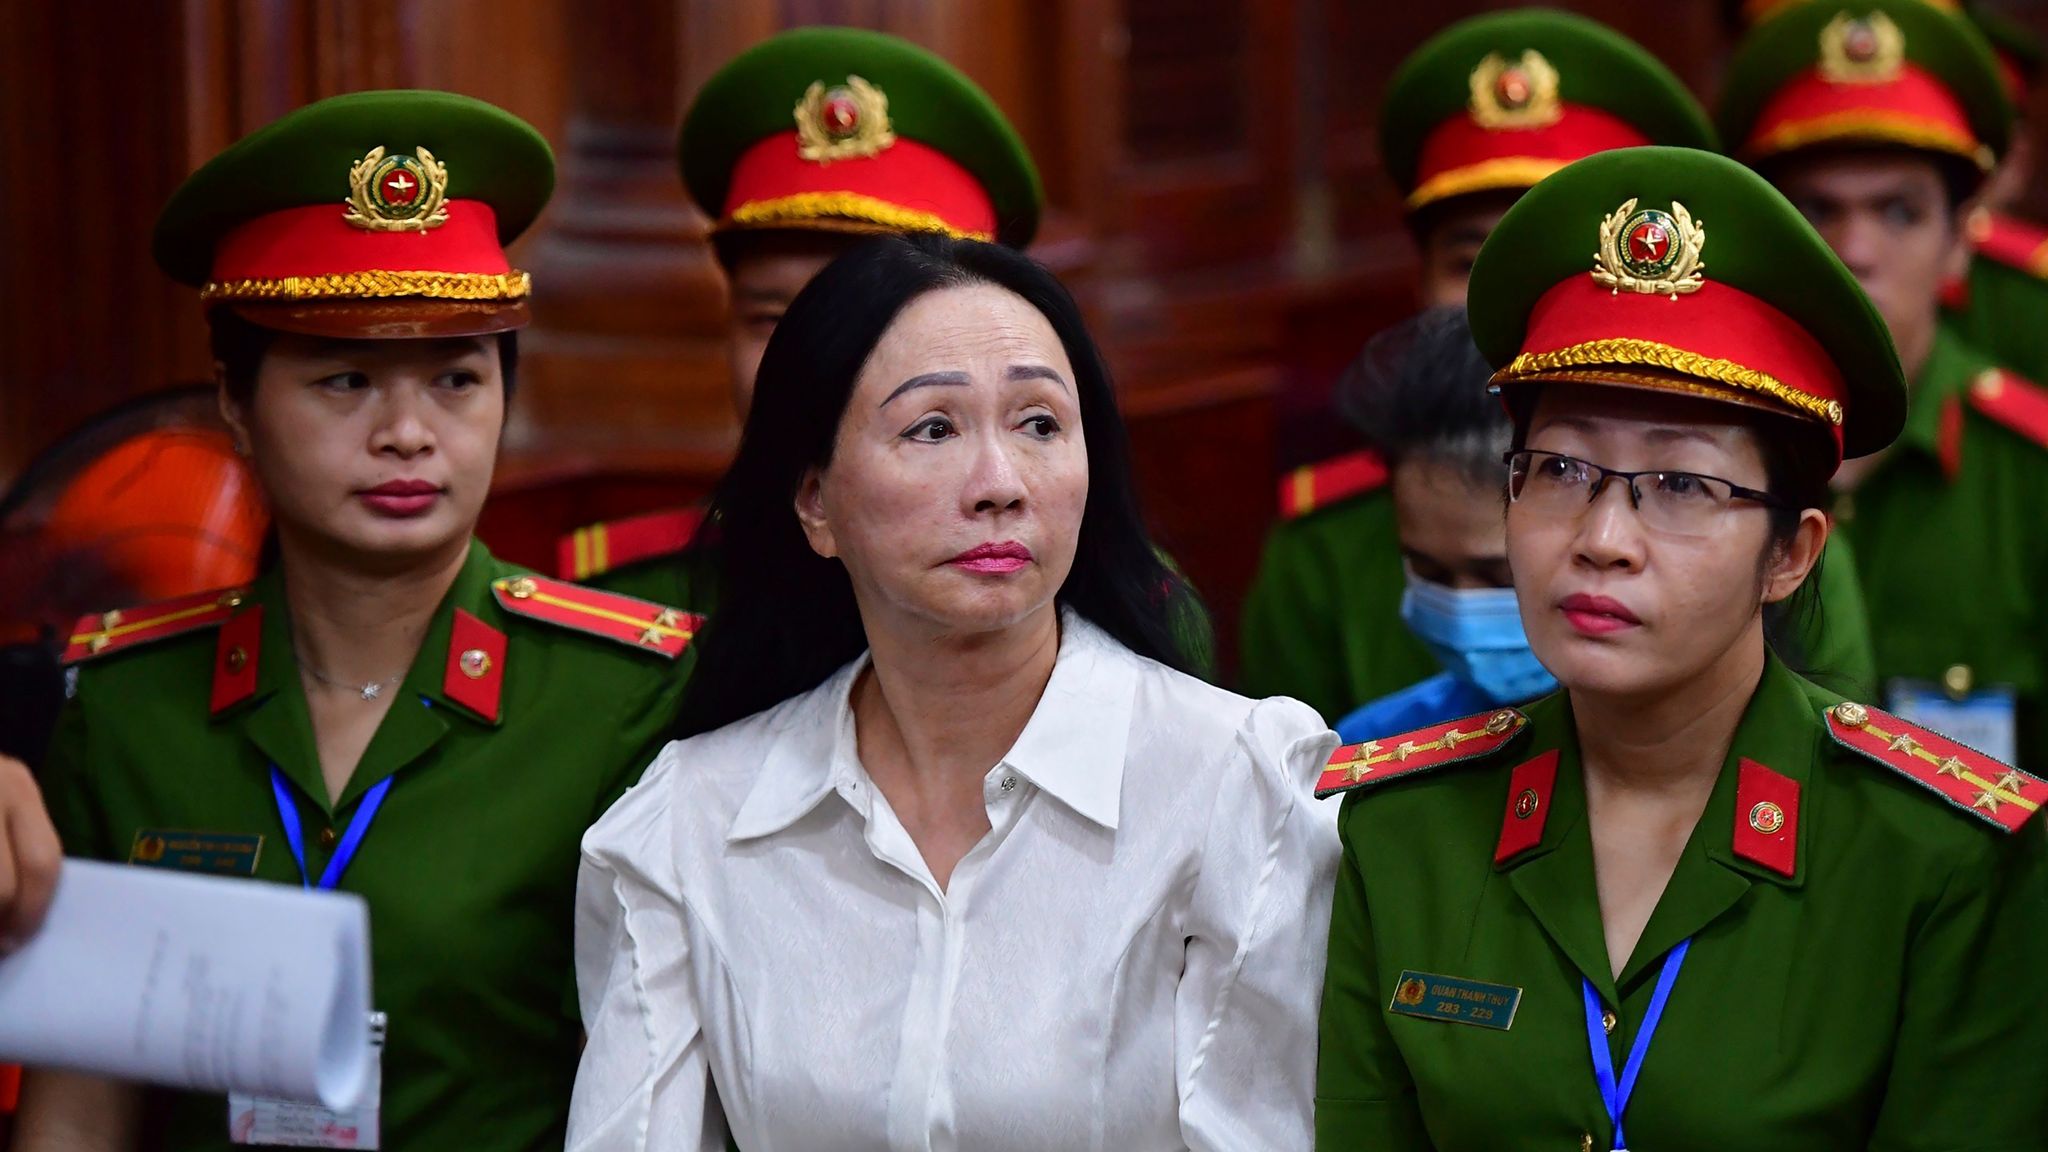 ट्रूंग माई लैन: वियतनाम के कुख्यात ट्रूंग माई लैन का उत्थान और पतन